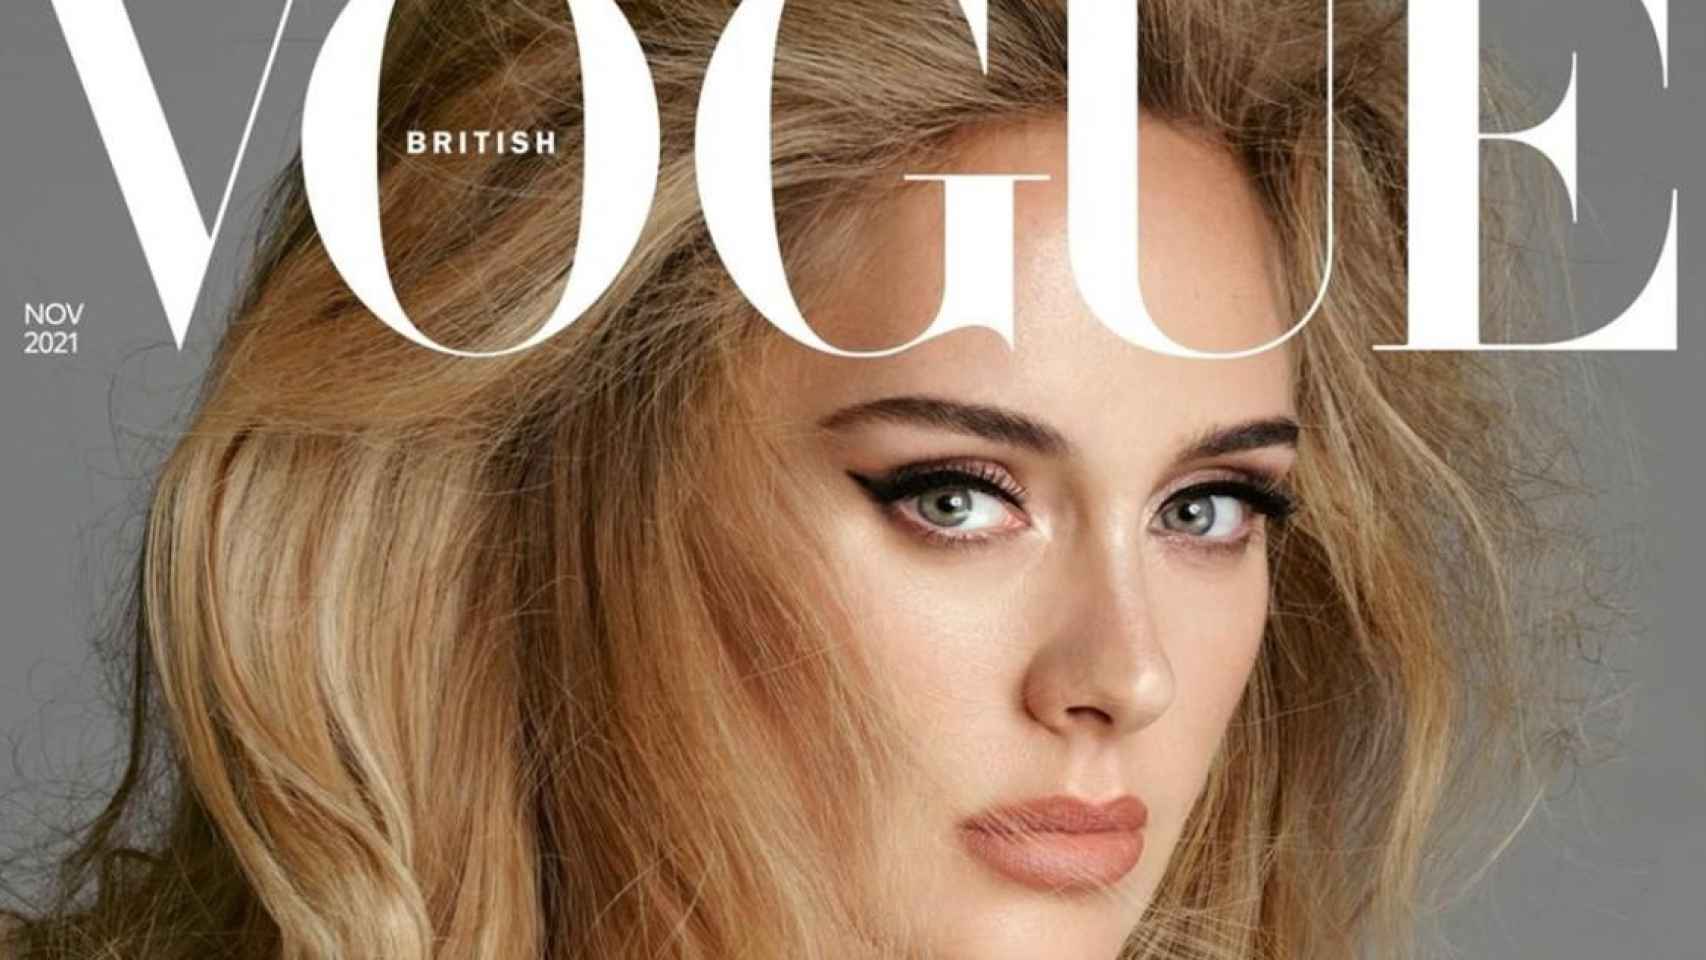 La cantante Adele para la versión británica de 'Vogue' / @adele